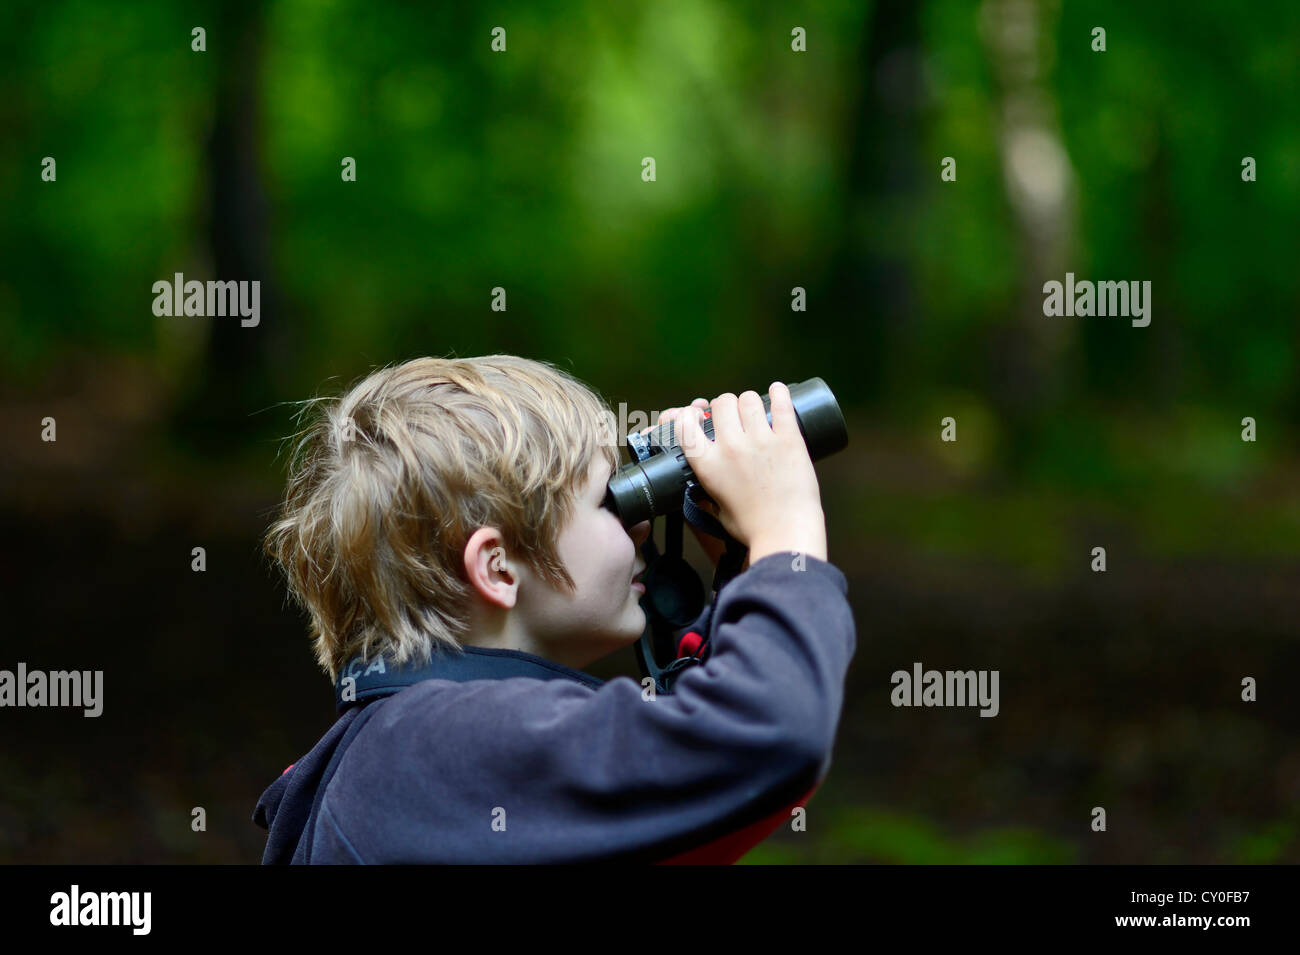 Junge Vögel beobachten im Wald Norfolk Sommer Modell veröffentlicht Stockfoto